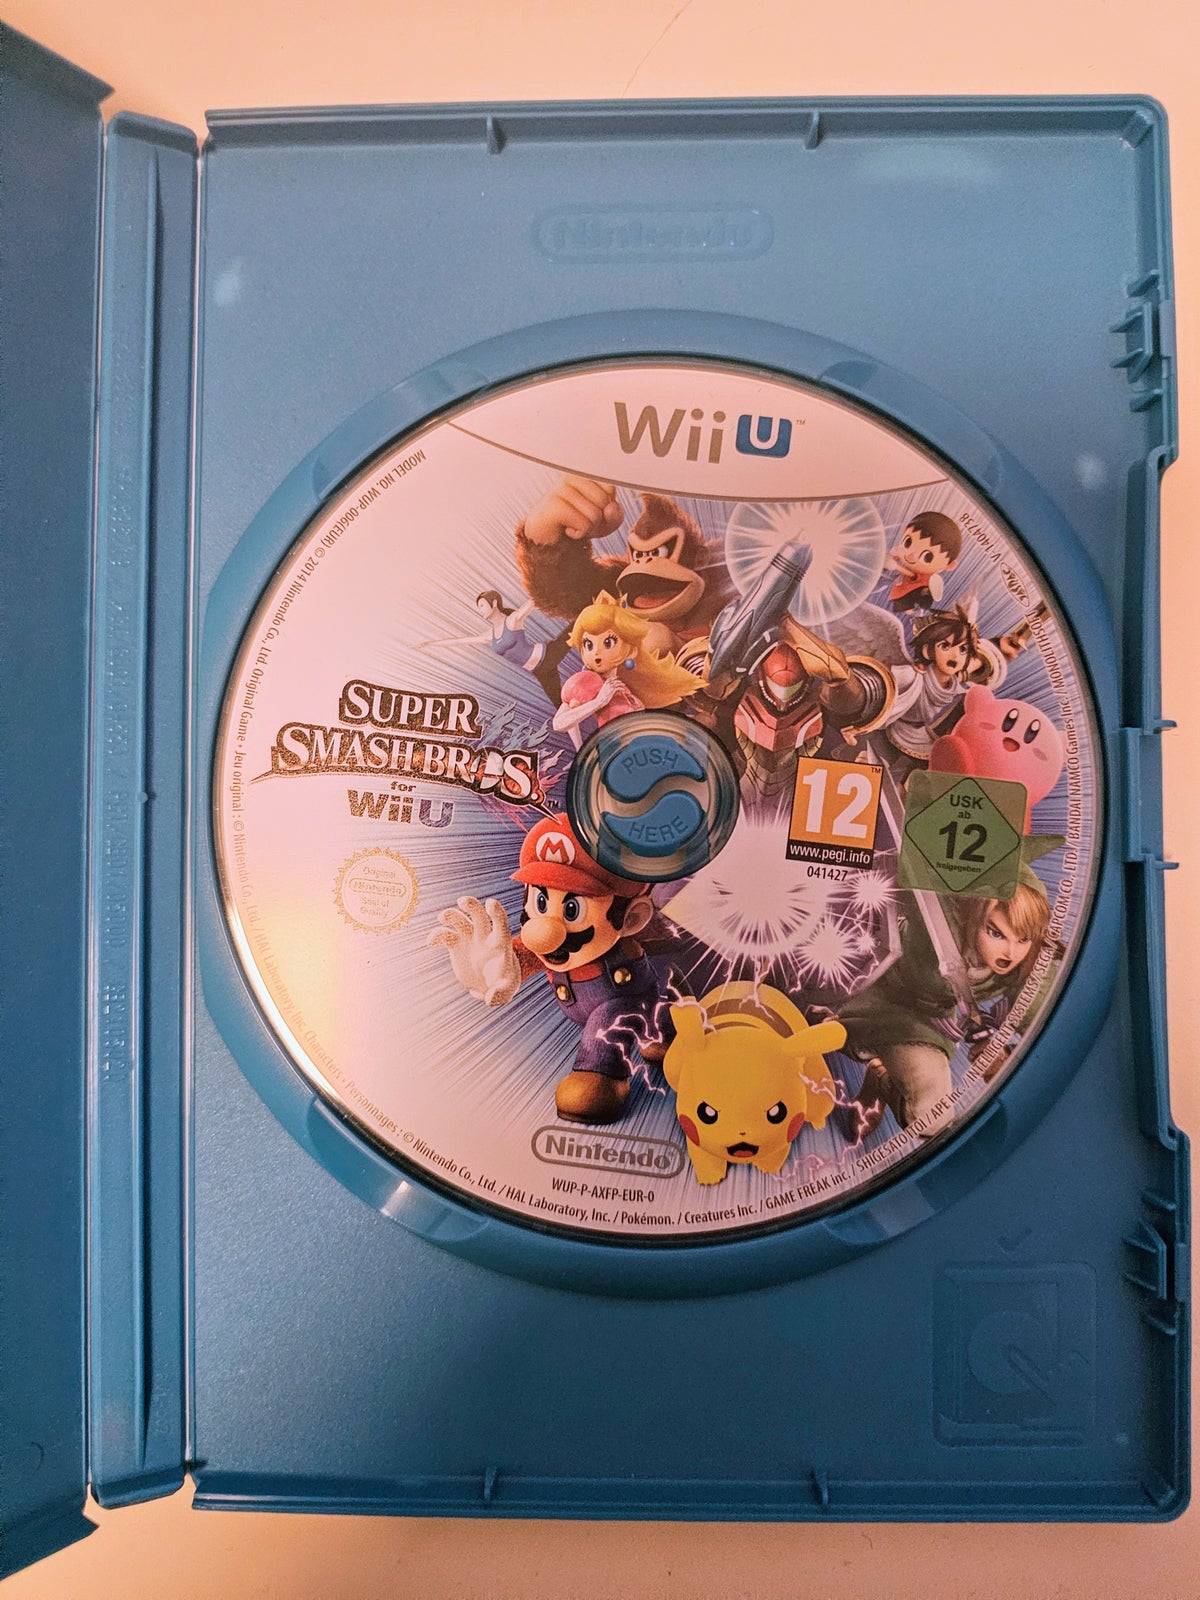 Super Smash Bros for, Nintendo Wii U